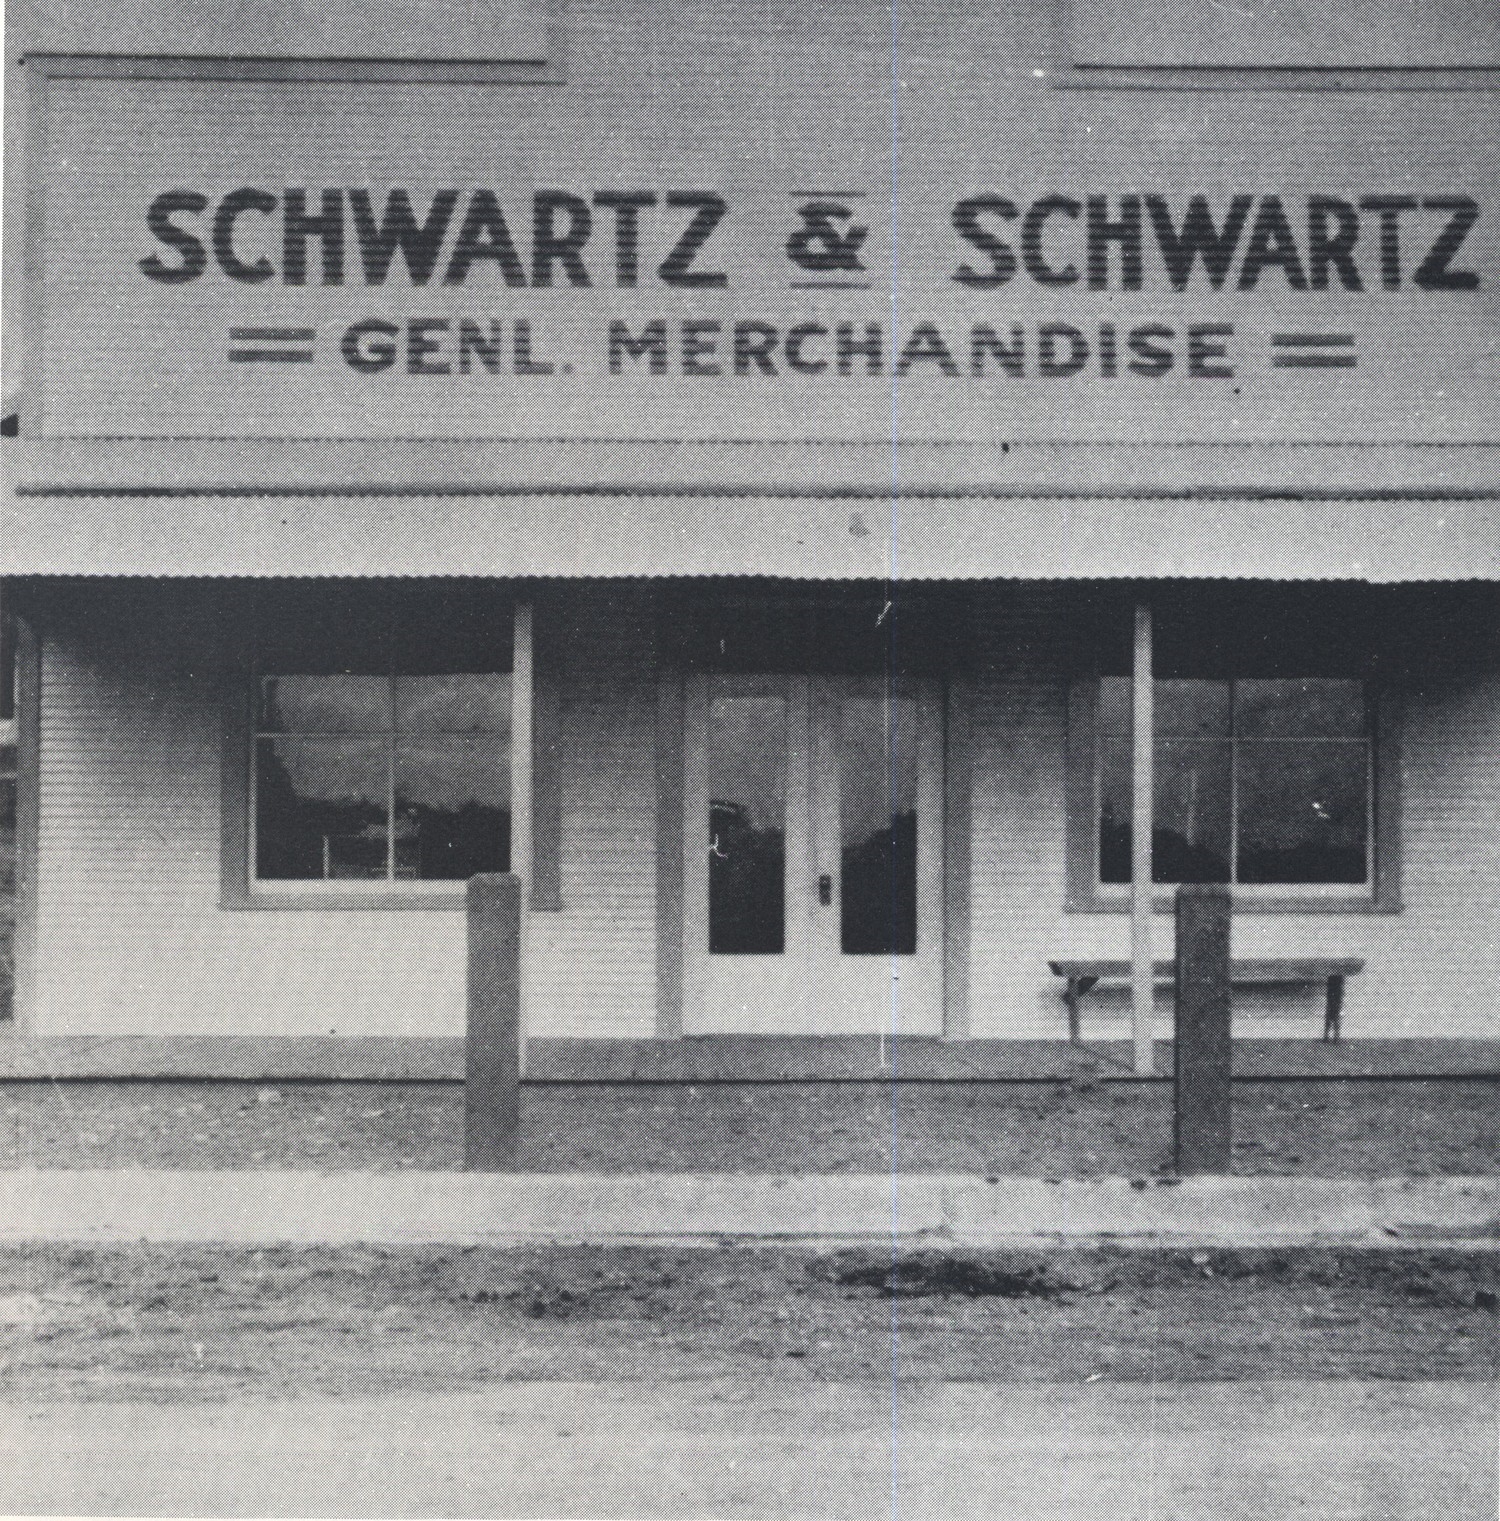 Schwartz & Schwartz Store, 1920s.